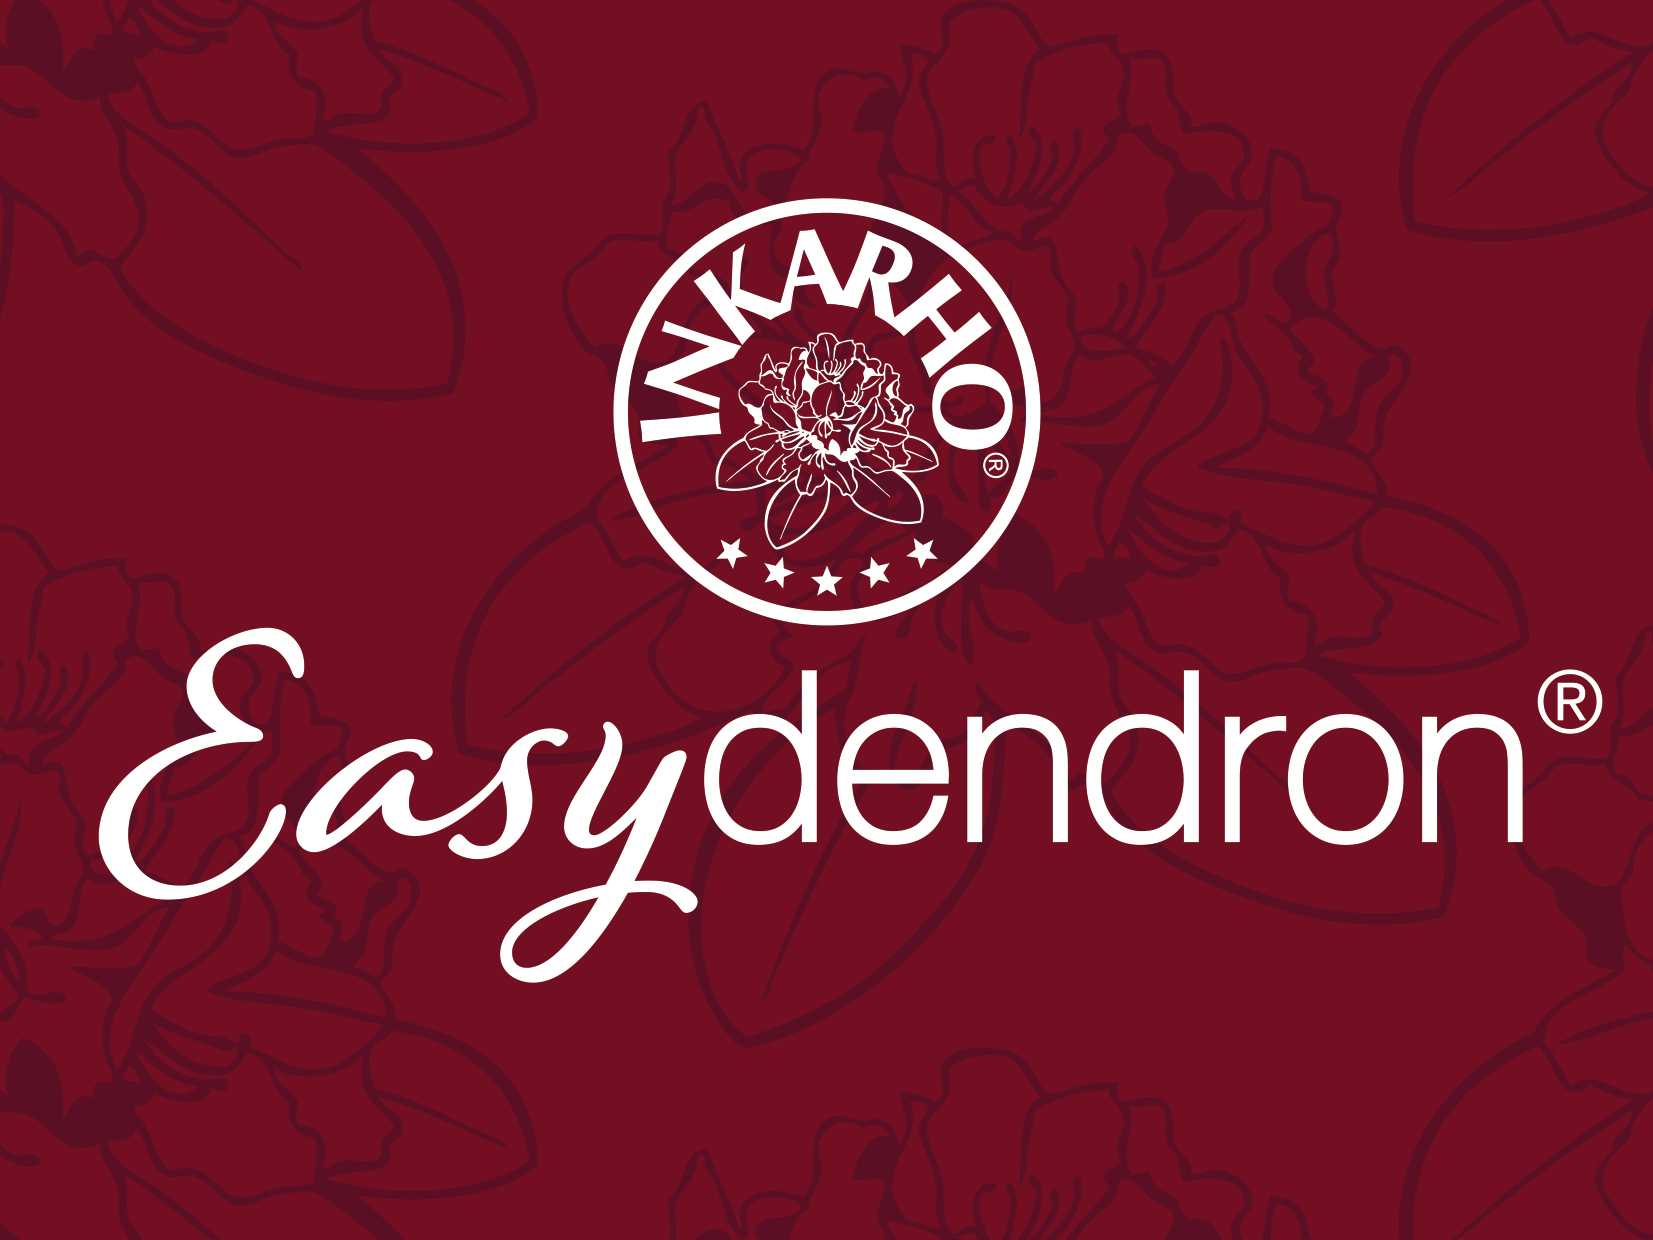 Easydendron Logo